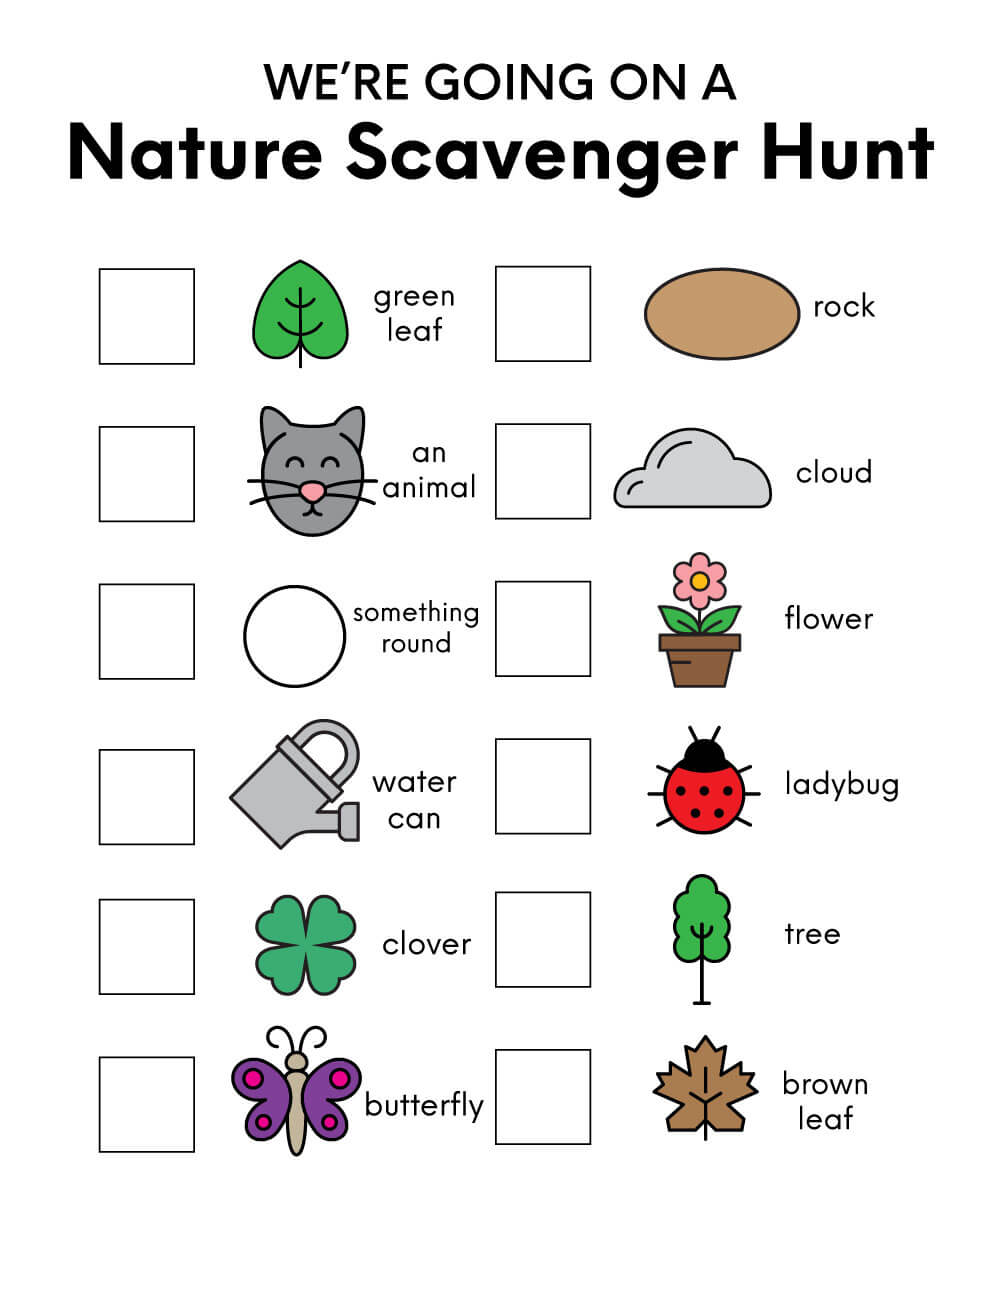 Nature Scavenger Hunt for Kids